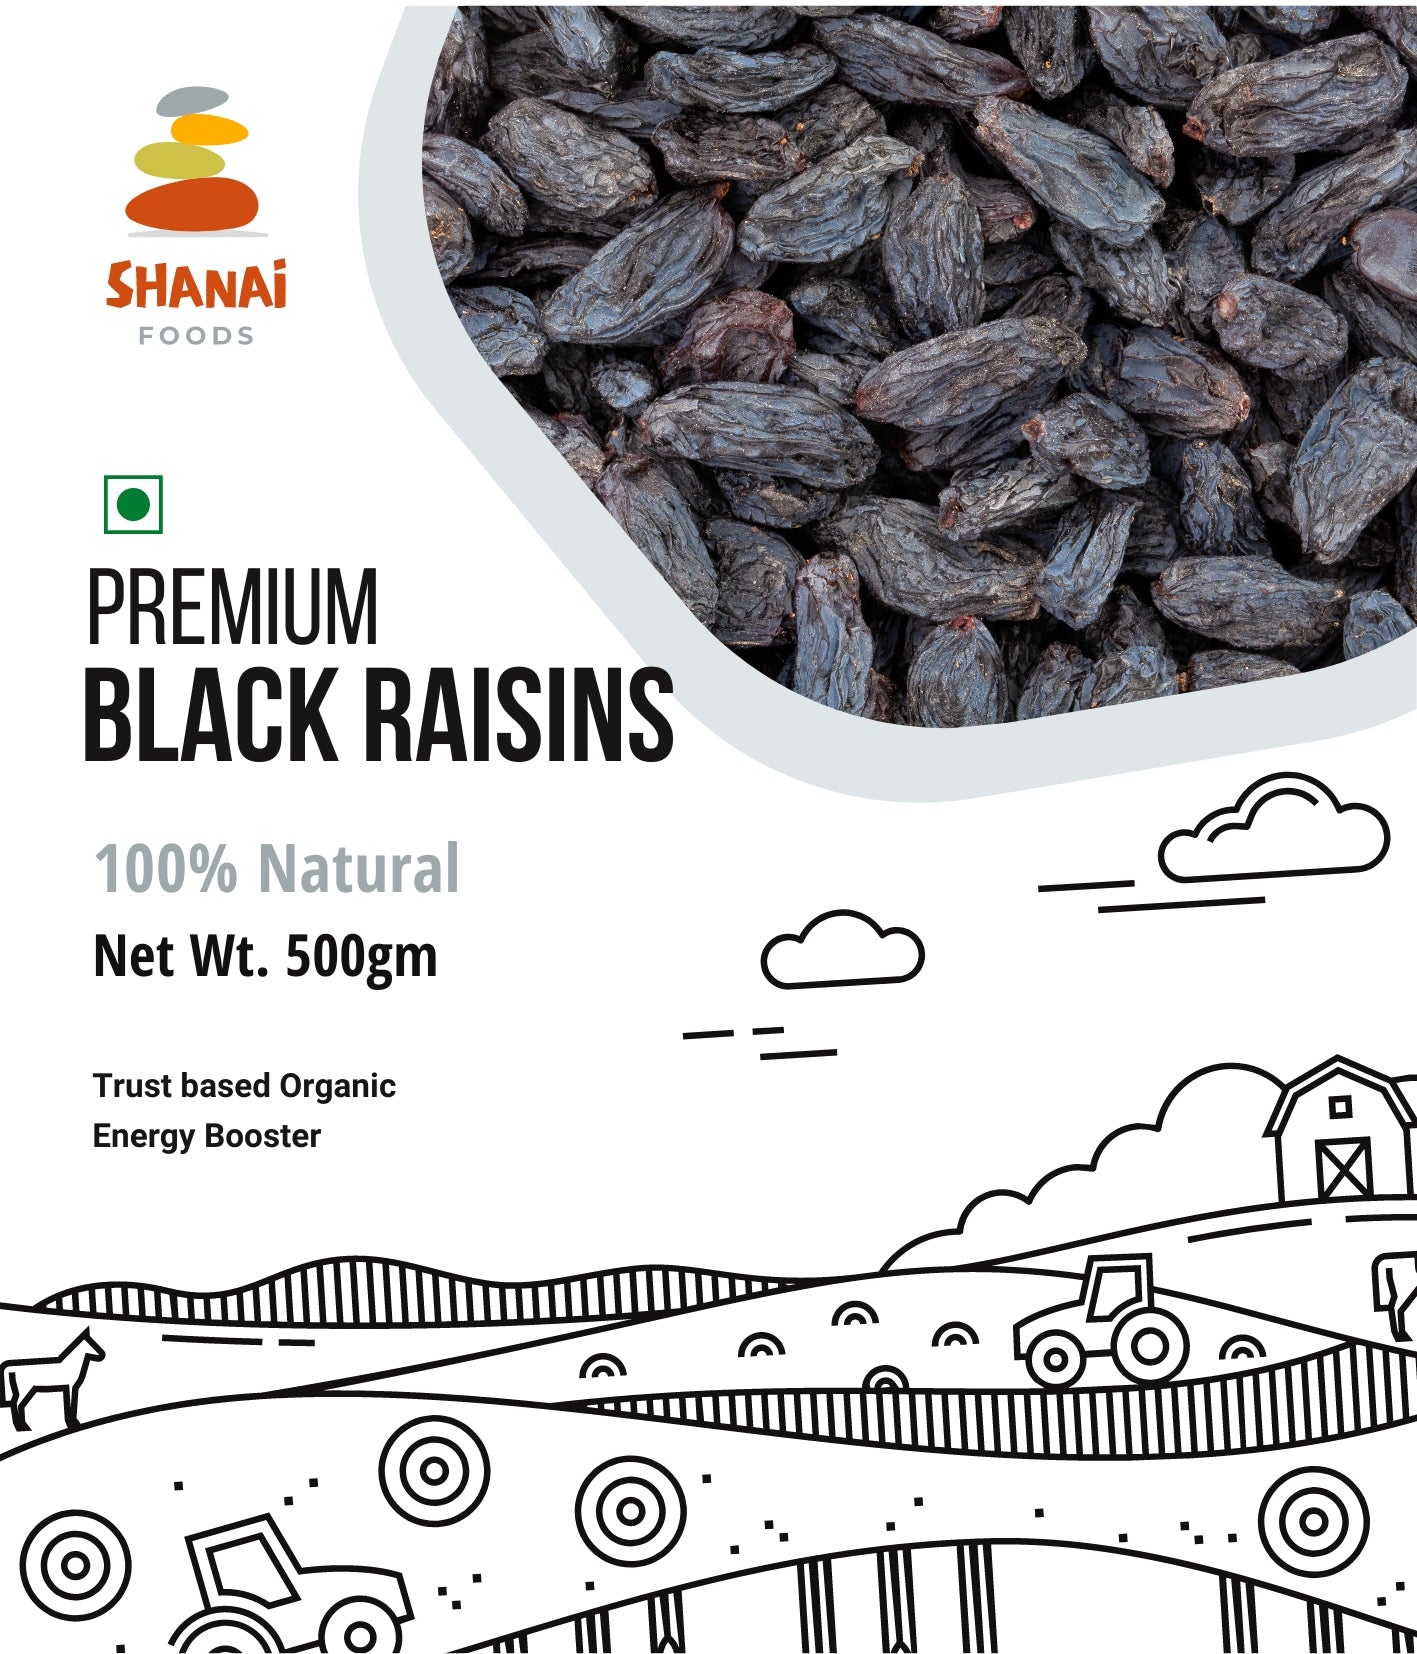 Premium Black Raisins